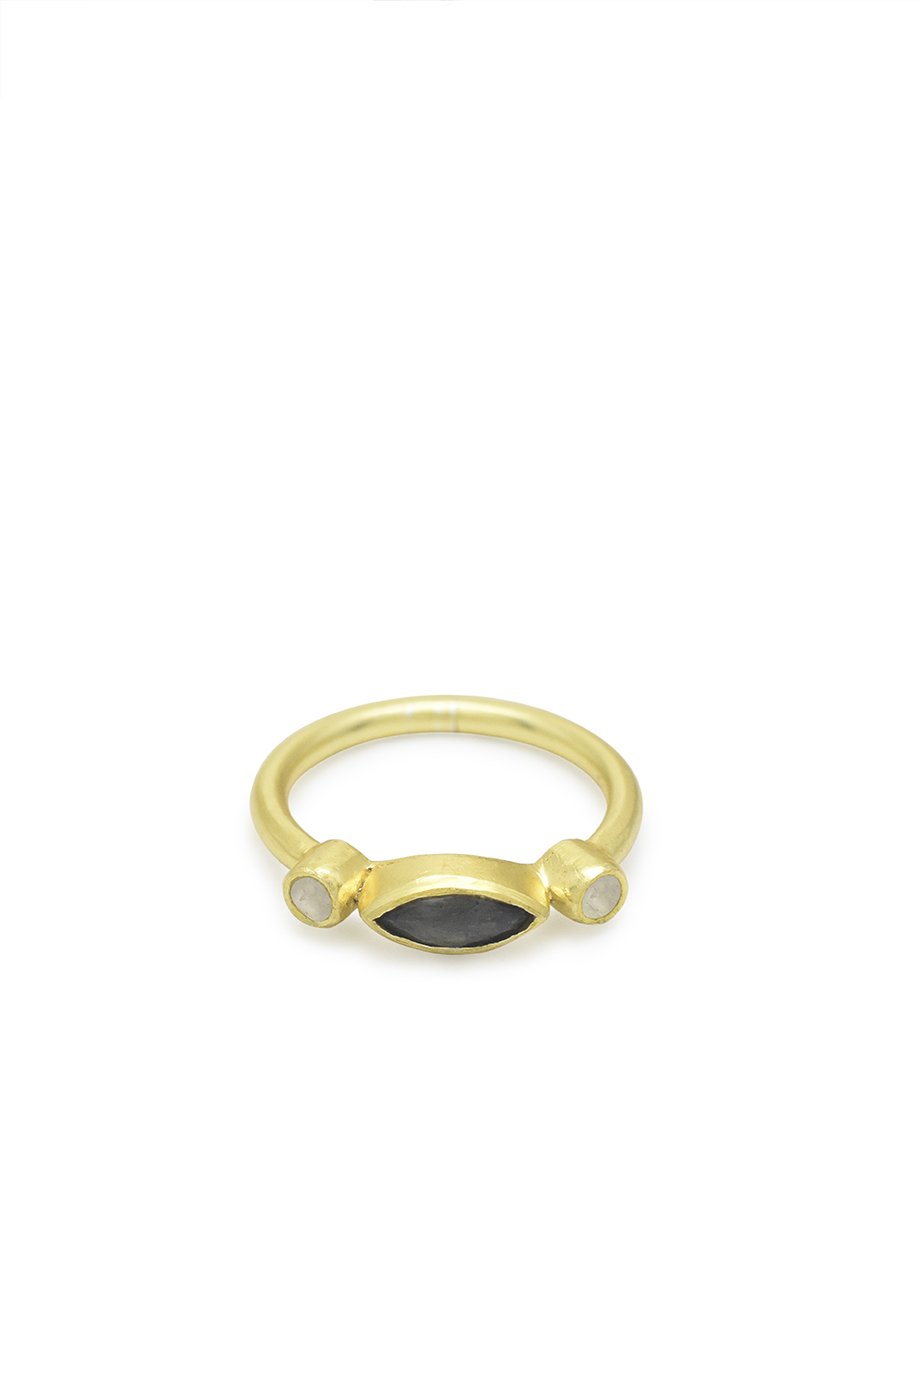 Husk Moonstone Ring - Gold